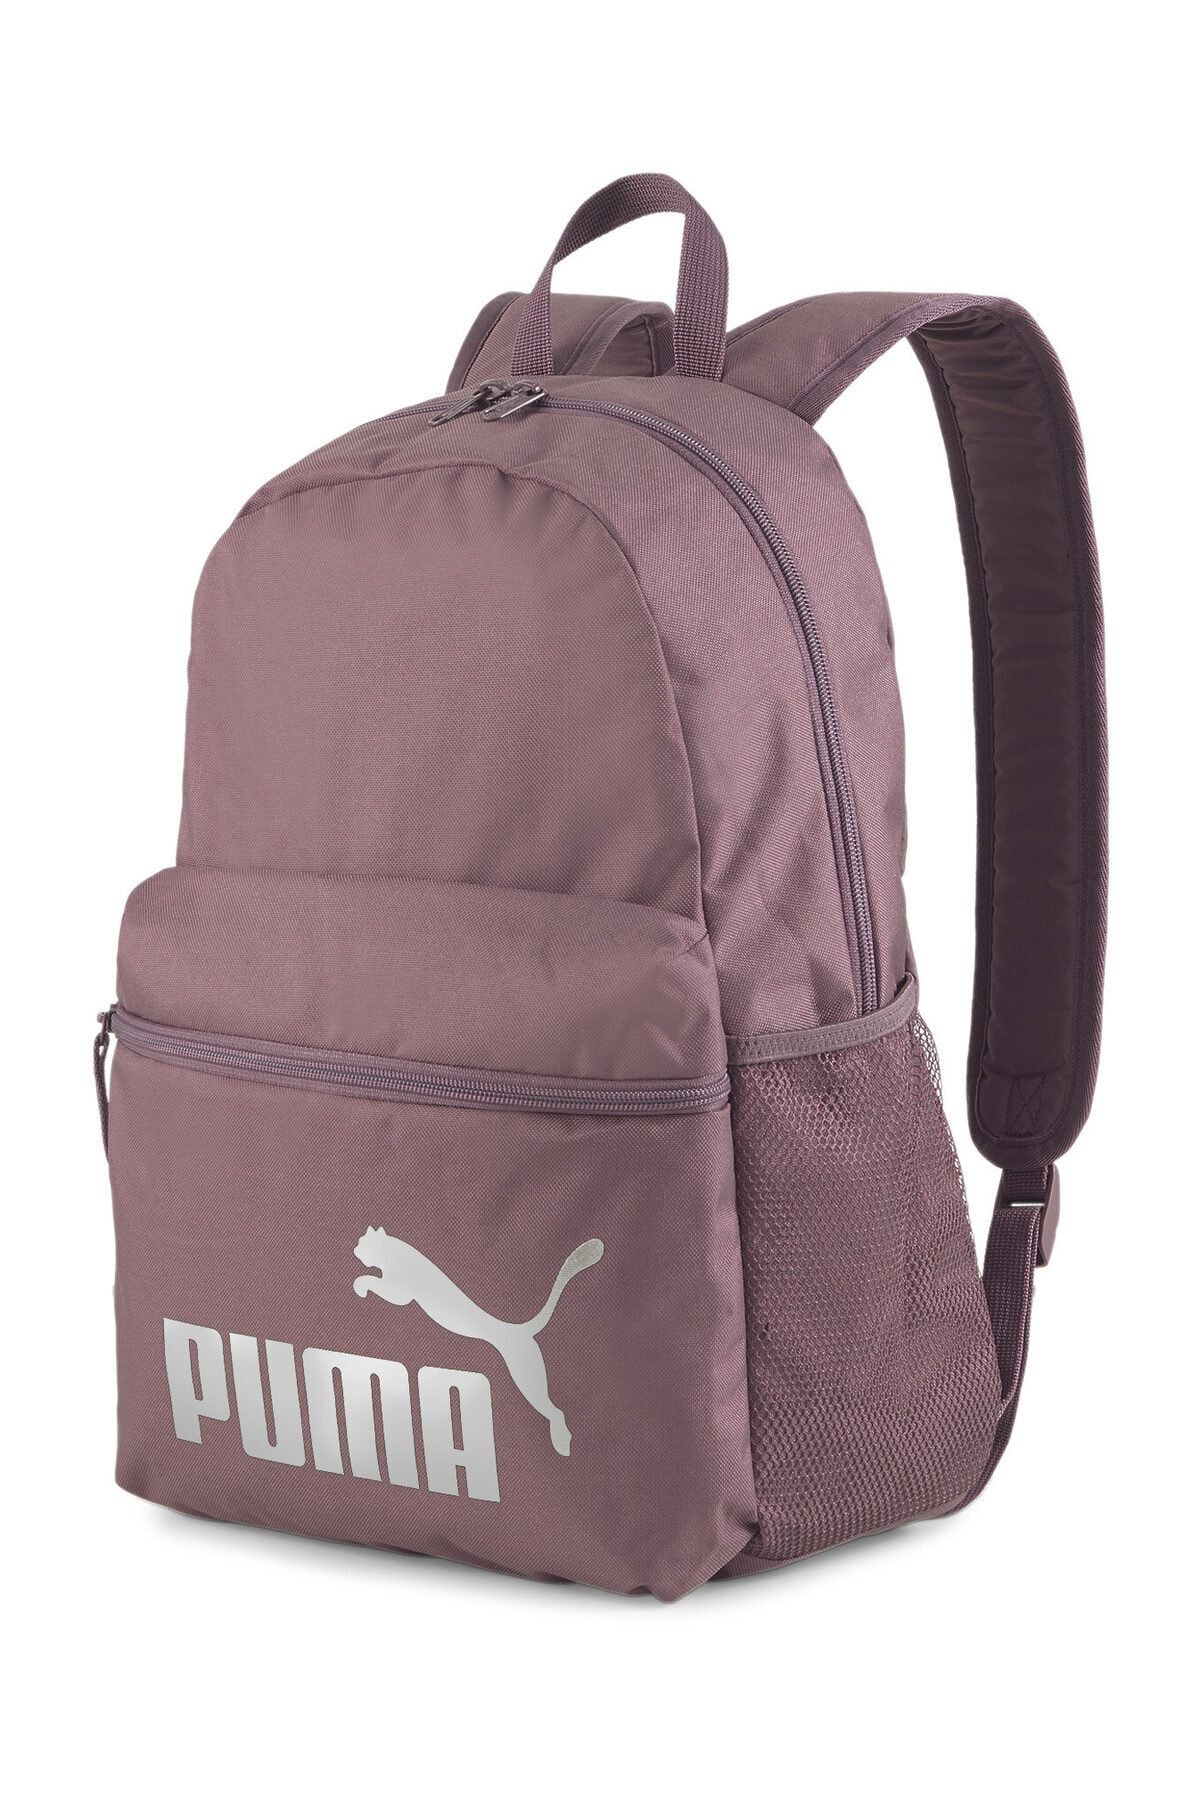 Puma Unisex Sırt Çantası - PUMA Phase Backpack Dusty Plum-Metallic - 07548741